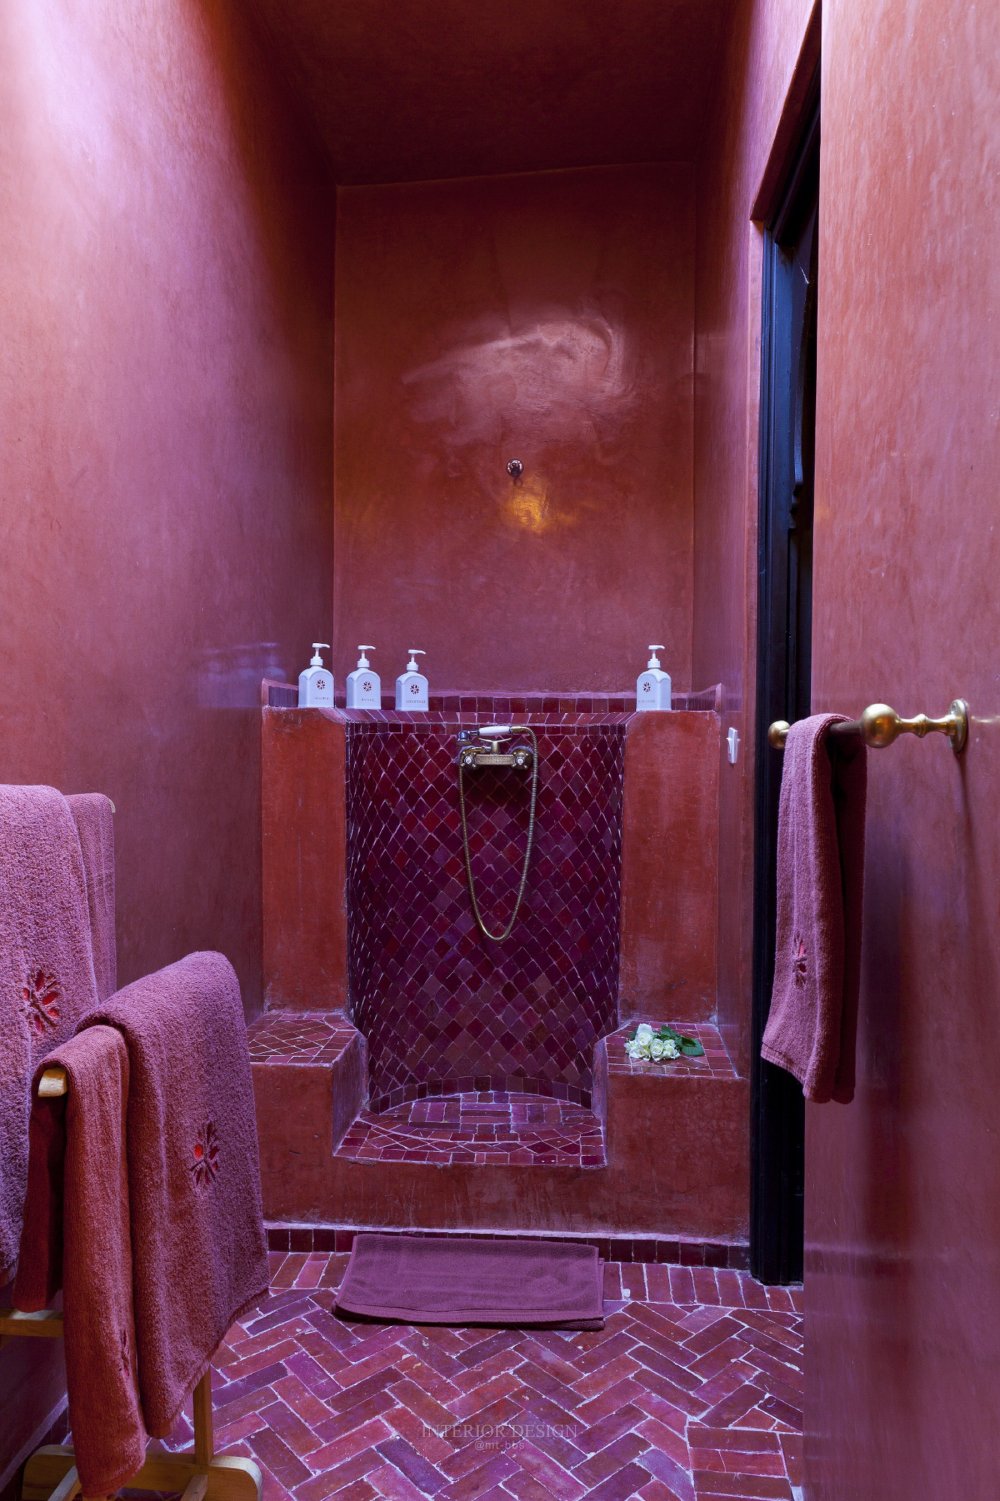 摩洛哥马拉喀什悦椿度假酒店 Angsana Riads Collection Morocco_34072460-H1-Zaouia_PG_1010_Bathroom7_9353.jpg